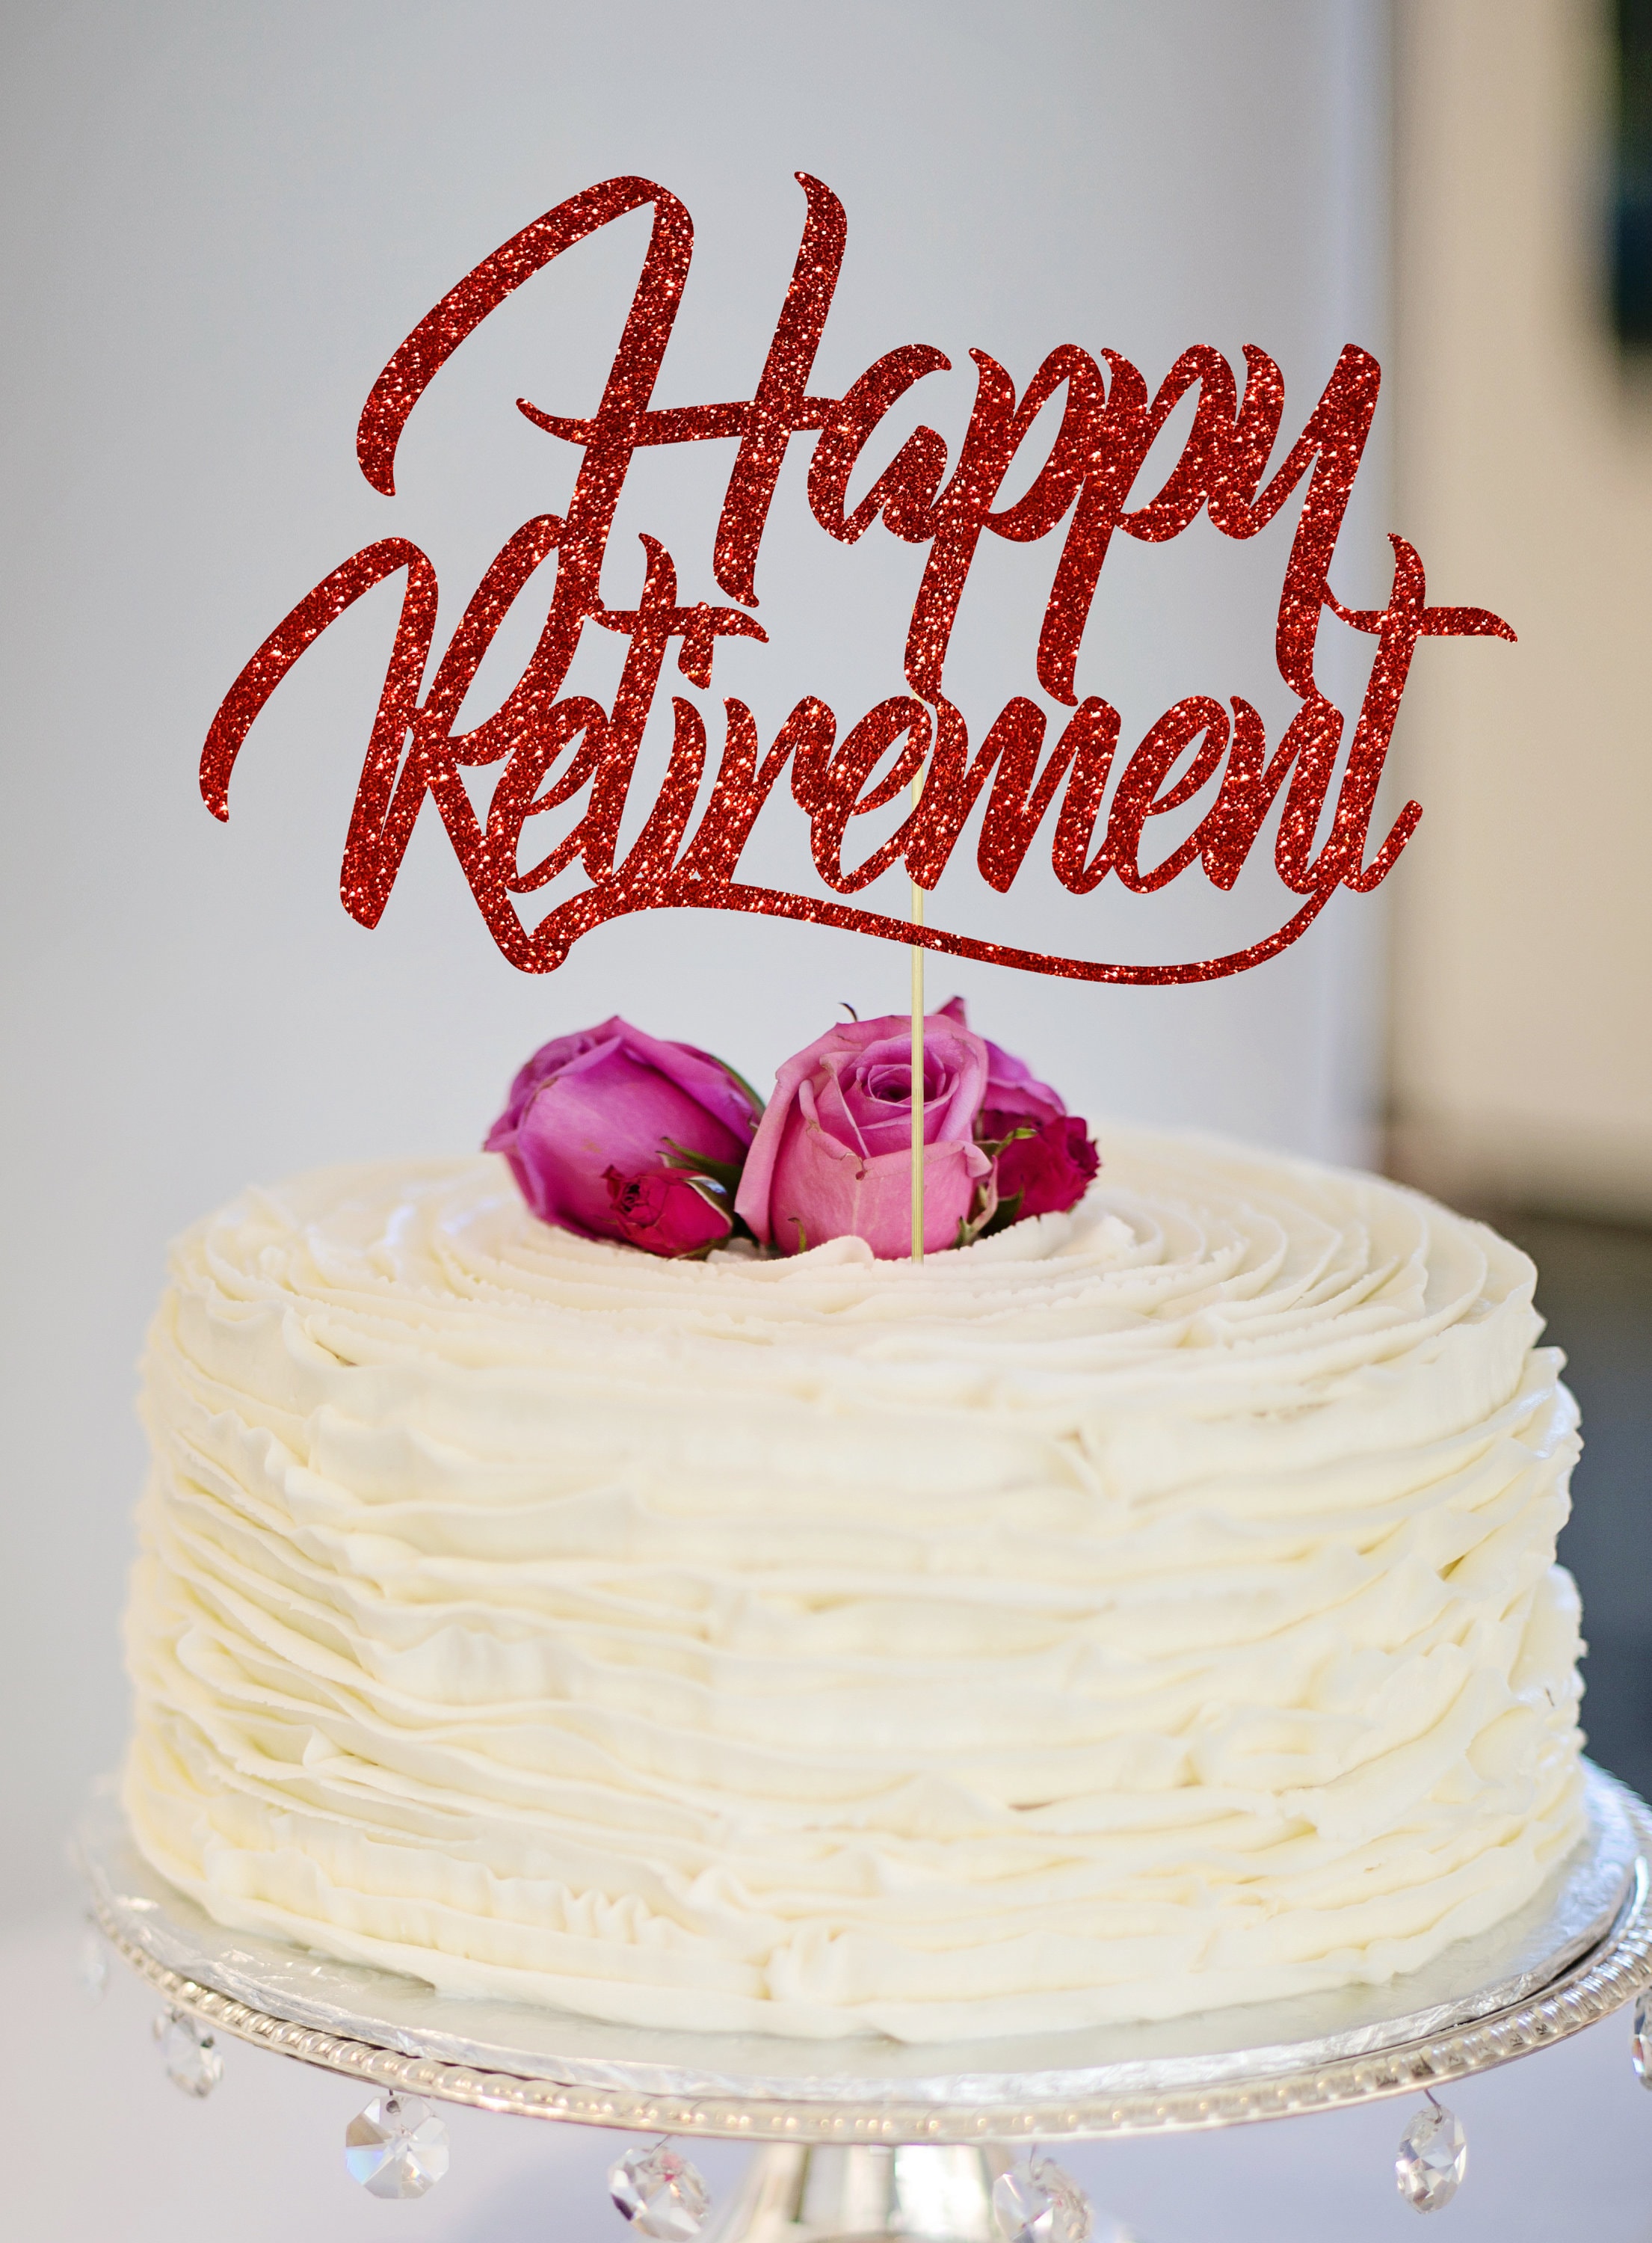 Happy Retirement Cake Topper Retirement Cake Topper Etsy